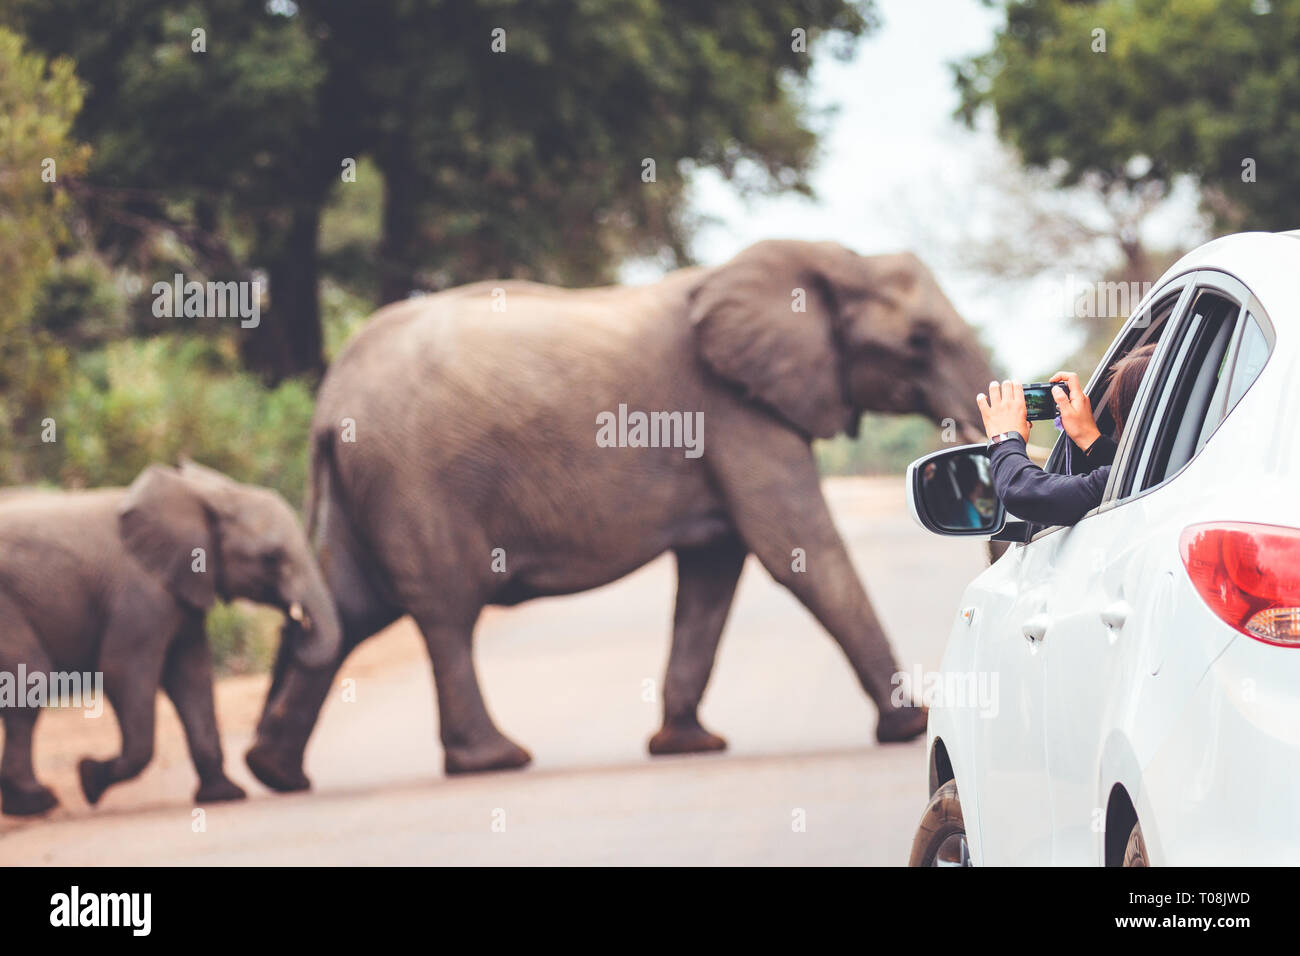 Ein Elefant Überqueren einer Straße, während ein Tourist ist das Aufnehmen von Fotos Stockfoto